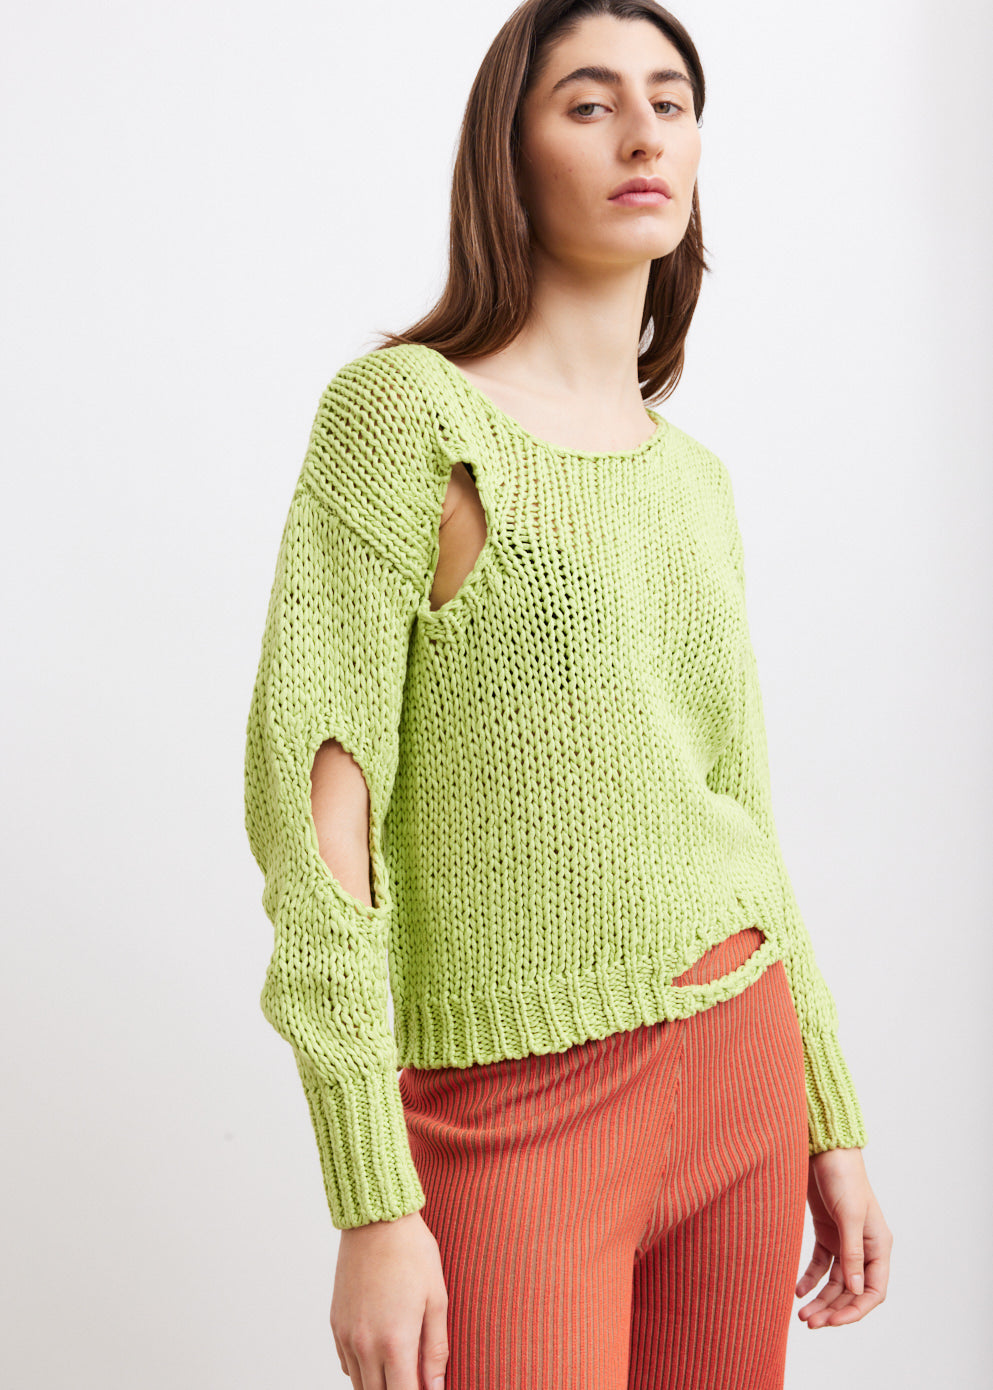 Renzo Knit Sweater